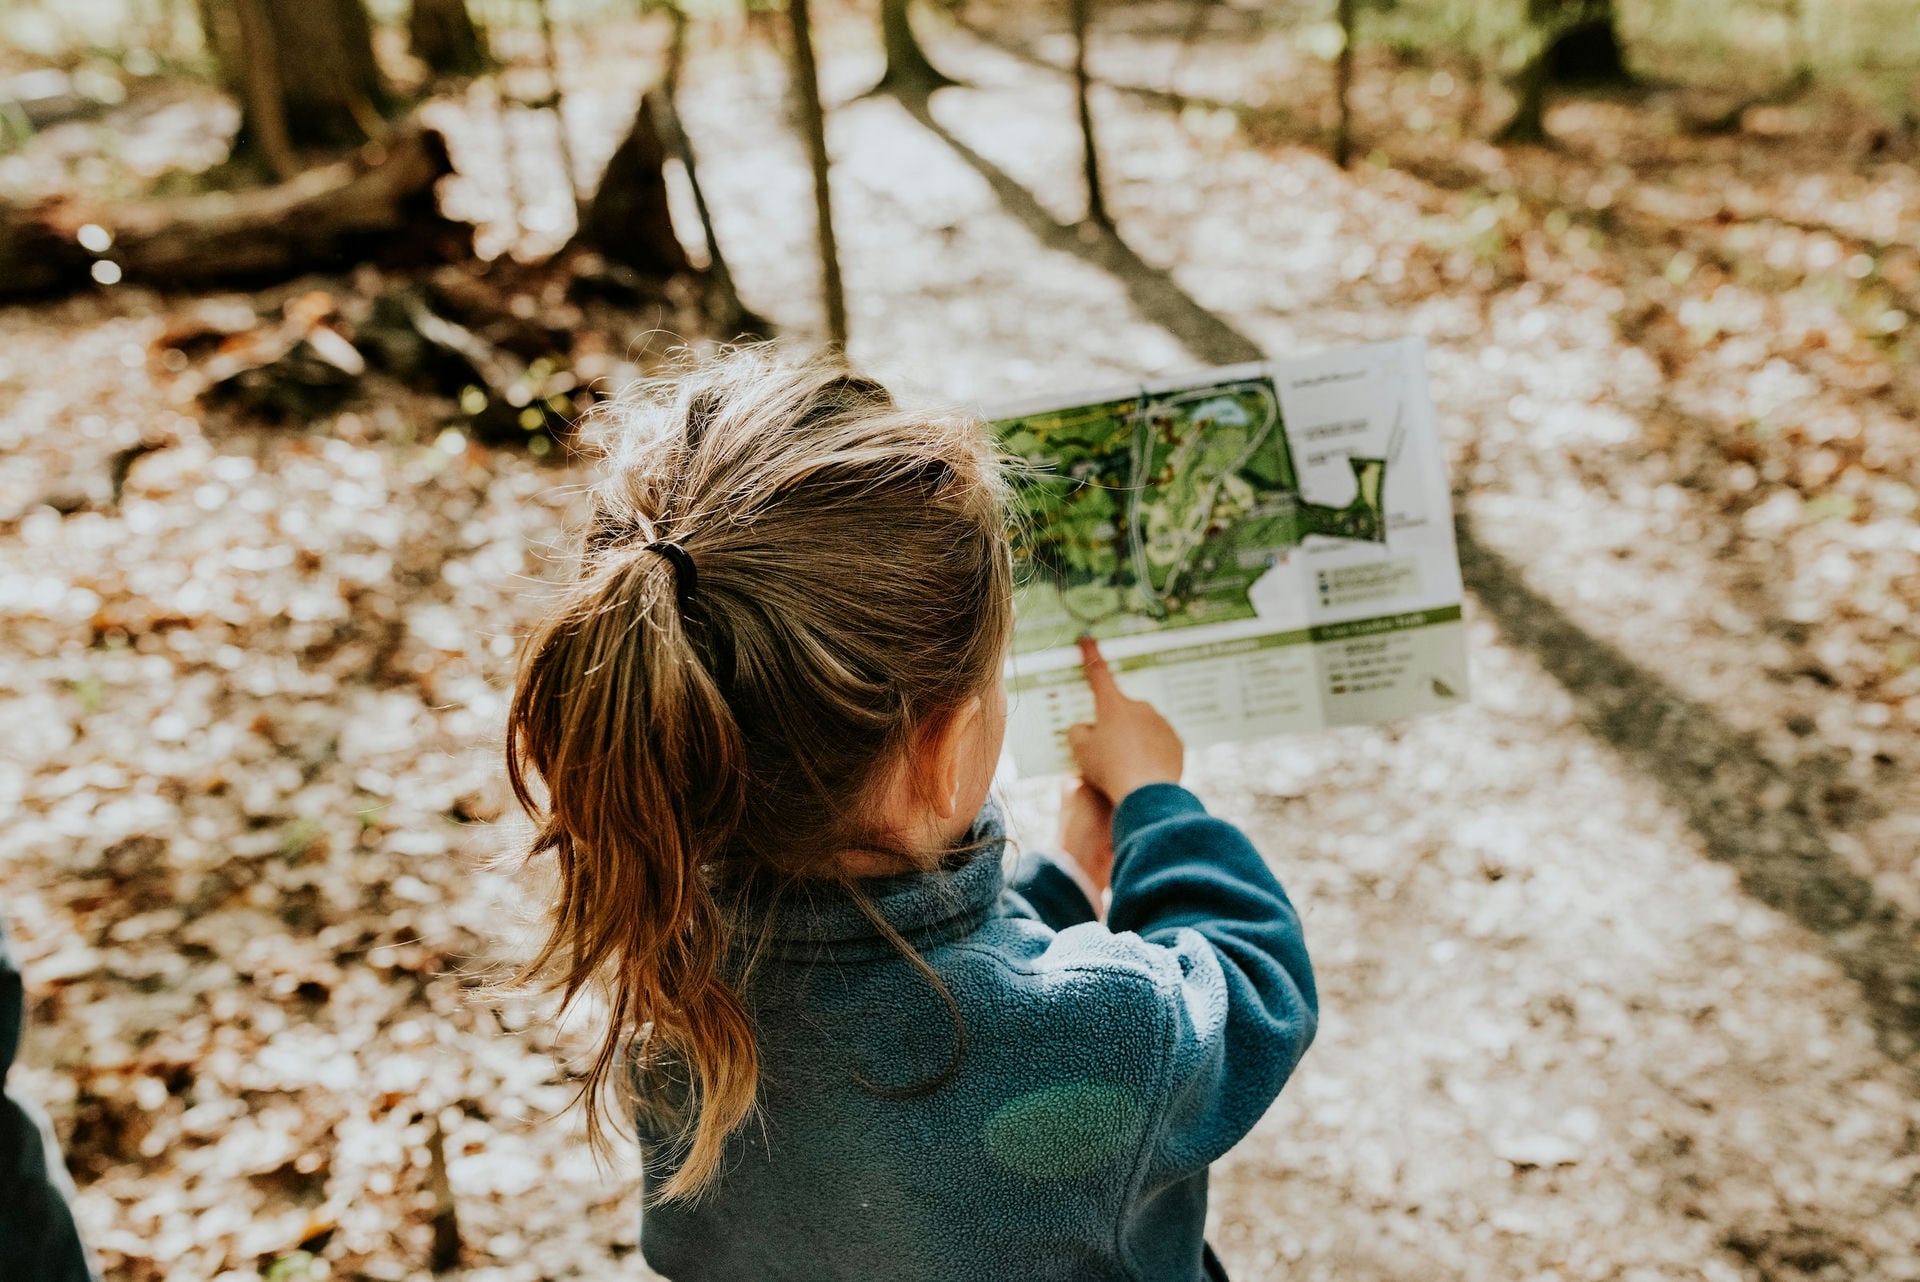 Naturkita Waldforscher - Ein fünfjähriges Mädchen mit Pferdeschwanz in einem lichten Sommerwald hält eine Landkarte vor sich und zeigt mit ihrem Finger darauf.